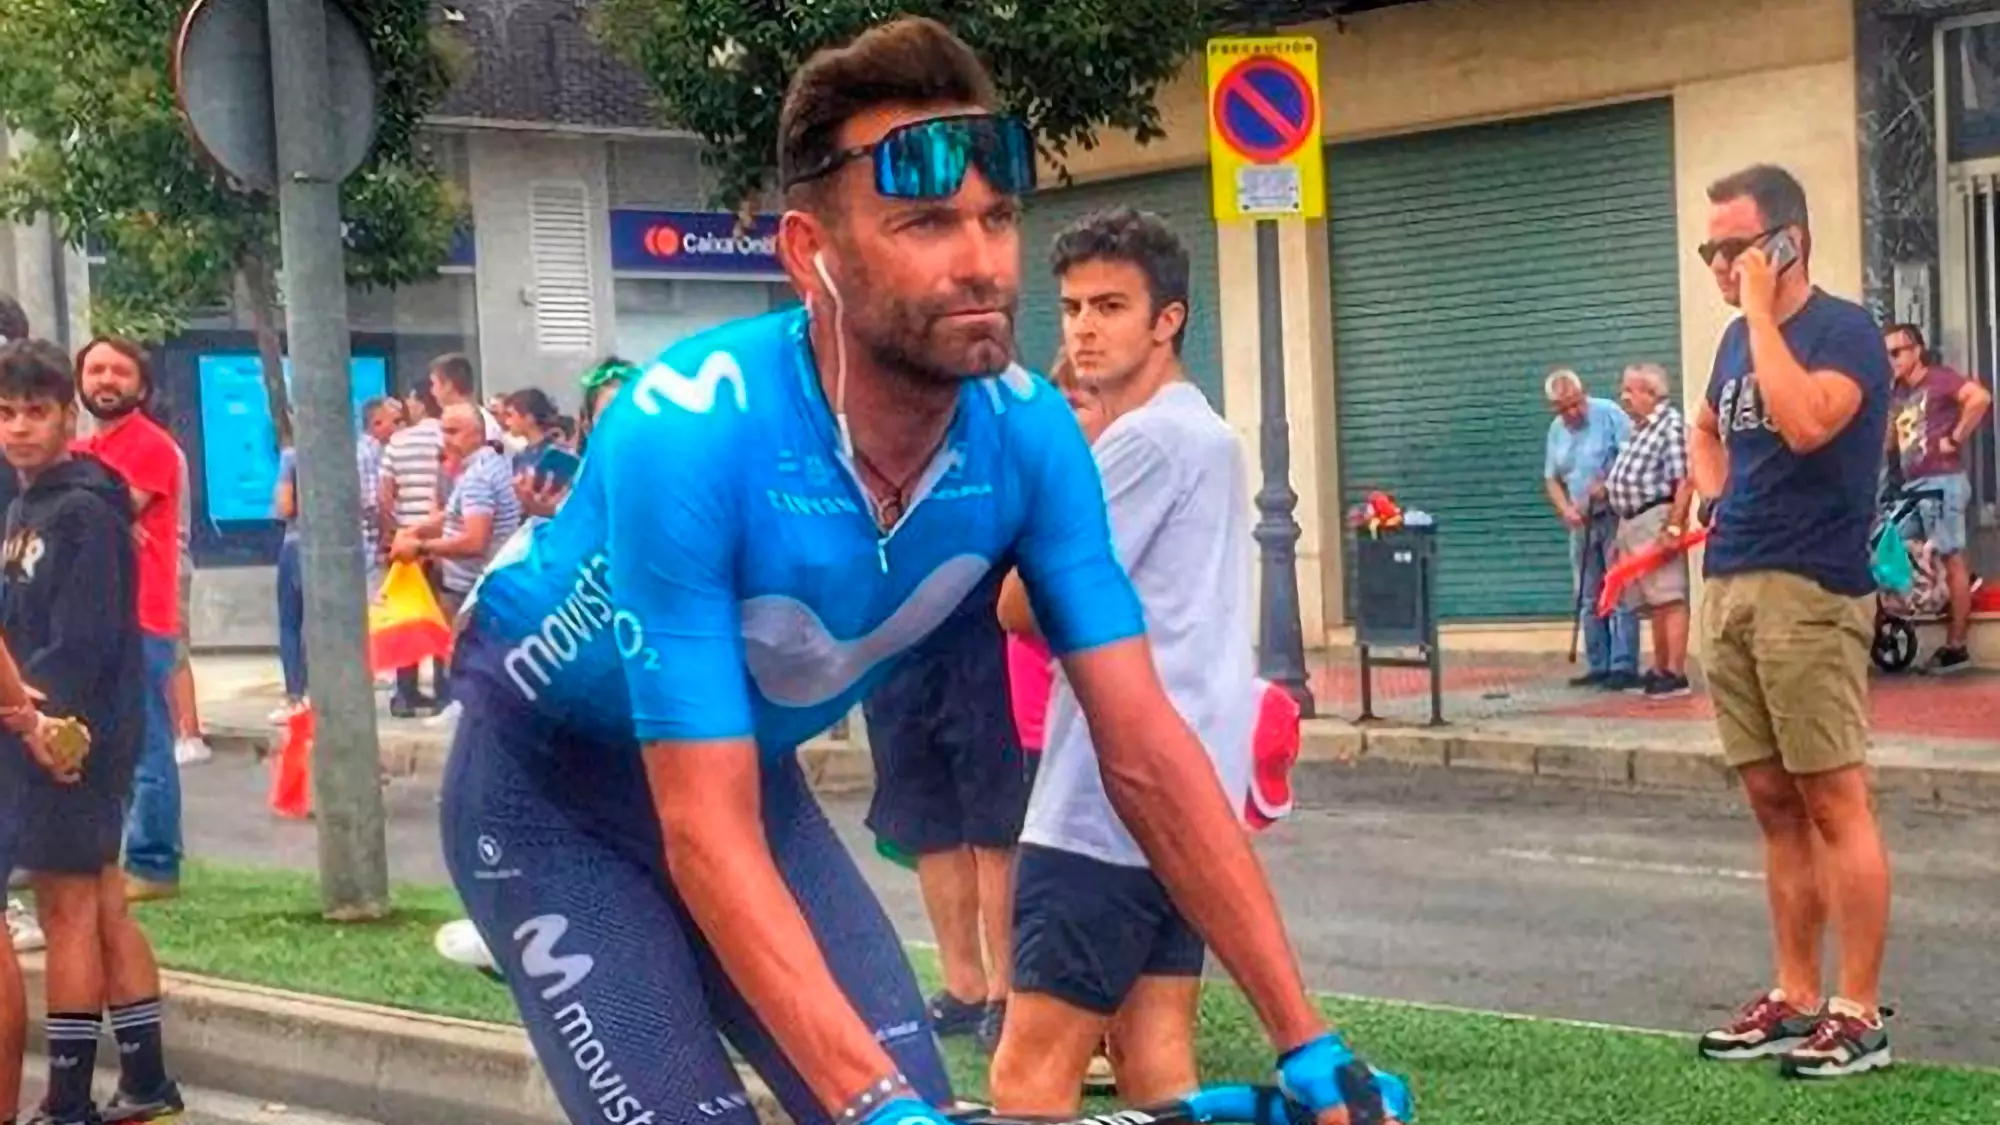 Cyclists Legs Look Hulk-Like Following Gruelling Race In Spain